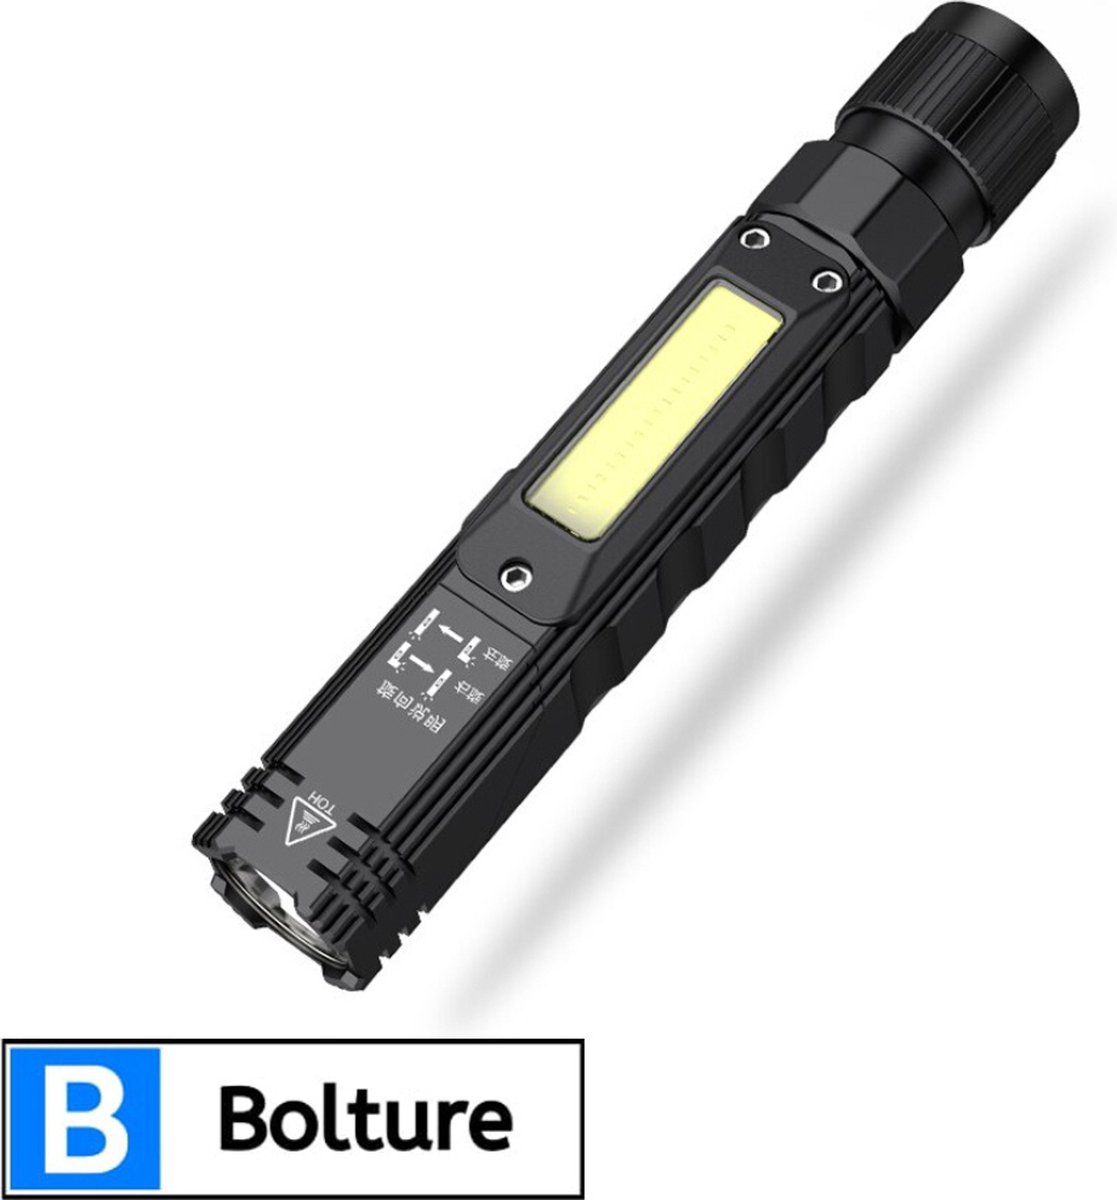 Bolture Zaklamp LED Oplaadbaar - USB Oplaadbare Zaklamp - Militaire Noodverlichting - Waterdicht - Inclusief Batterij - 500 Lumen